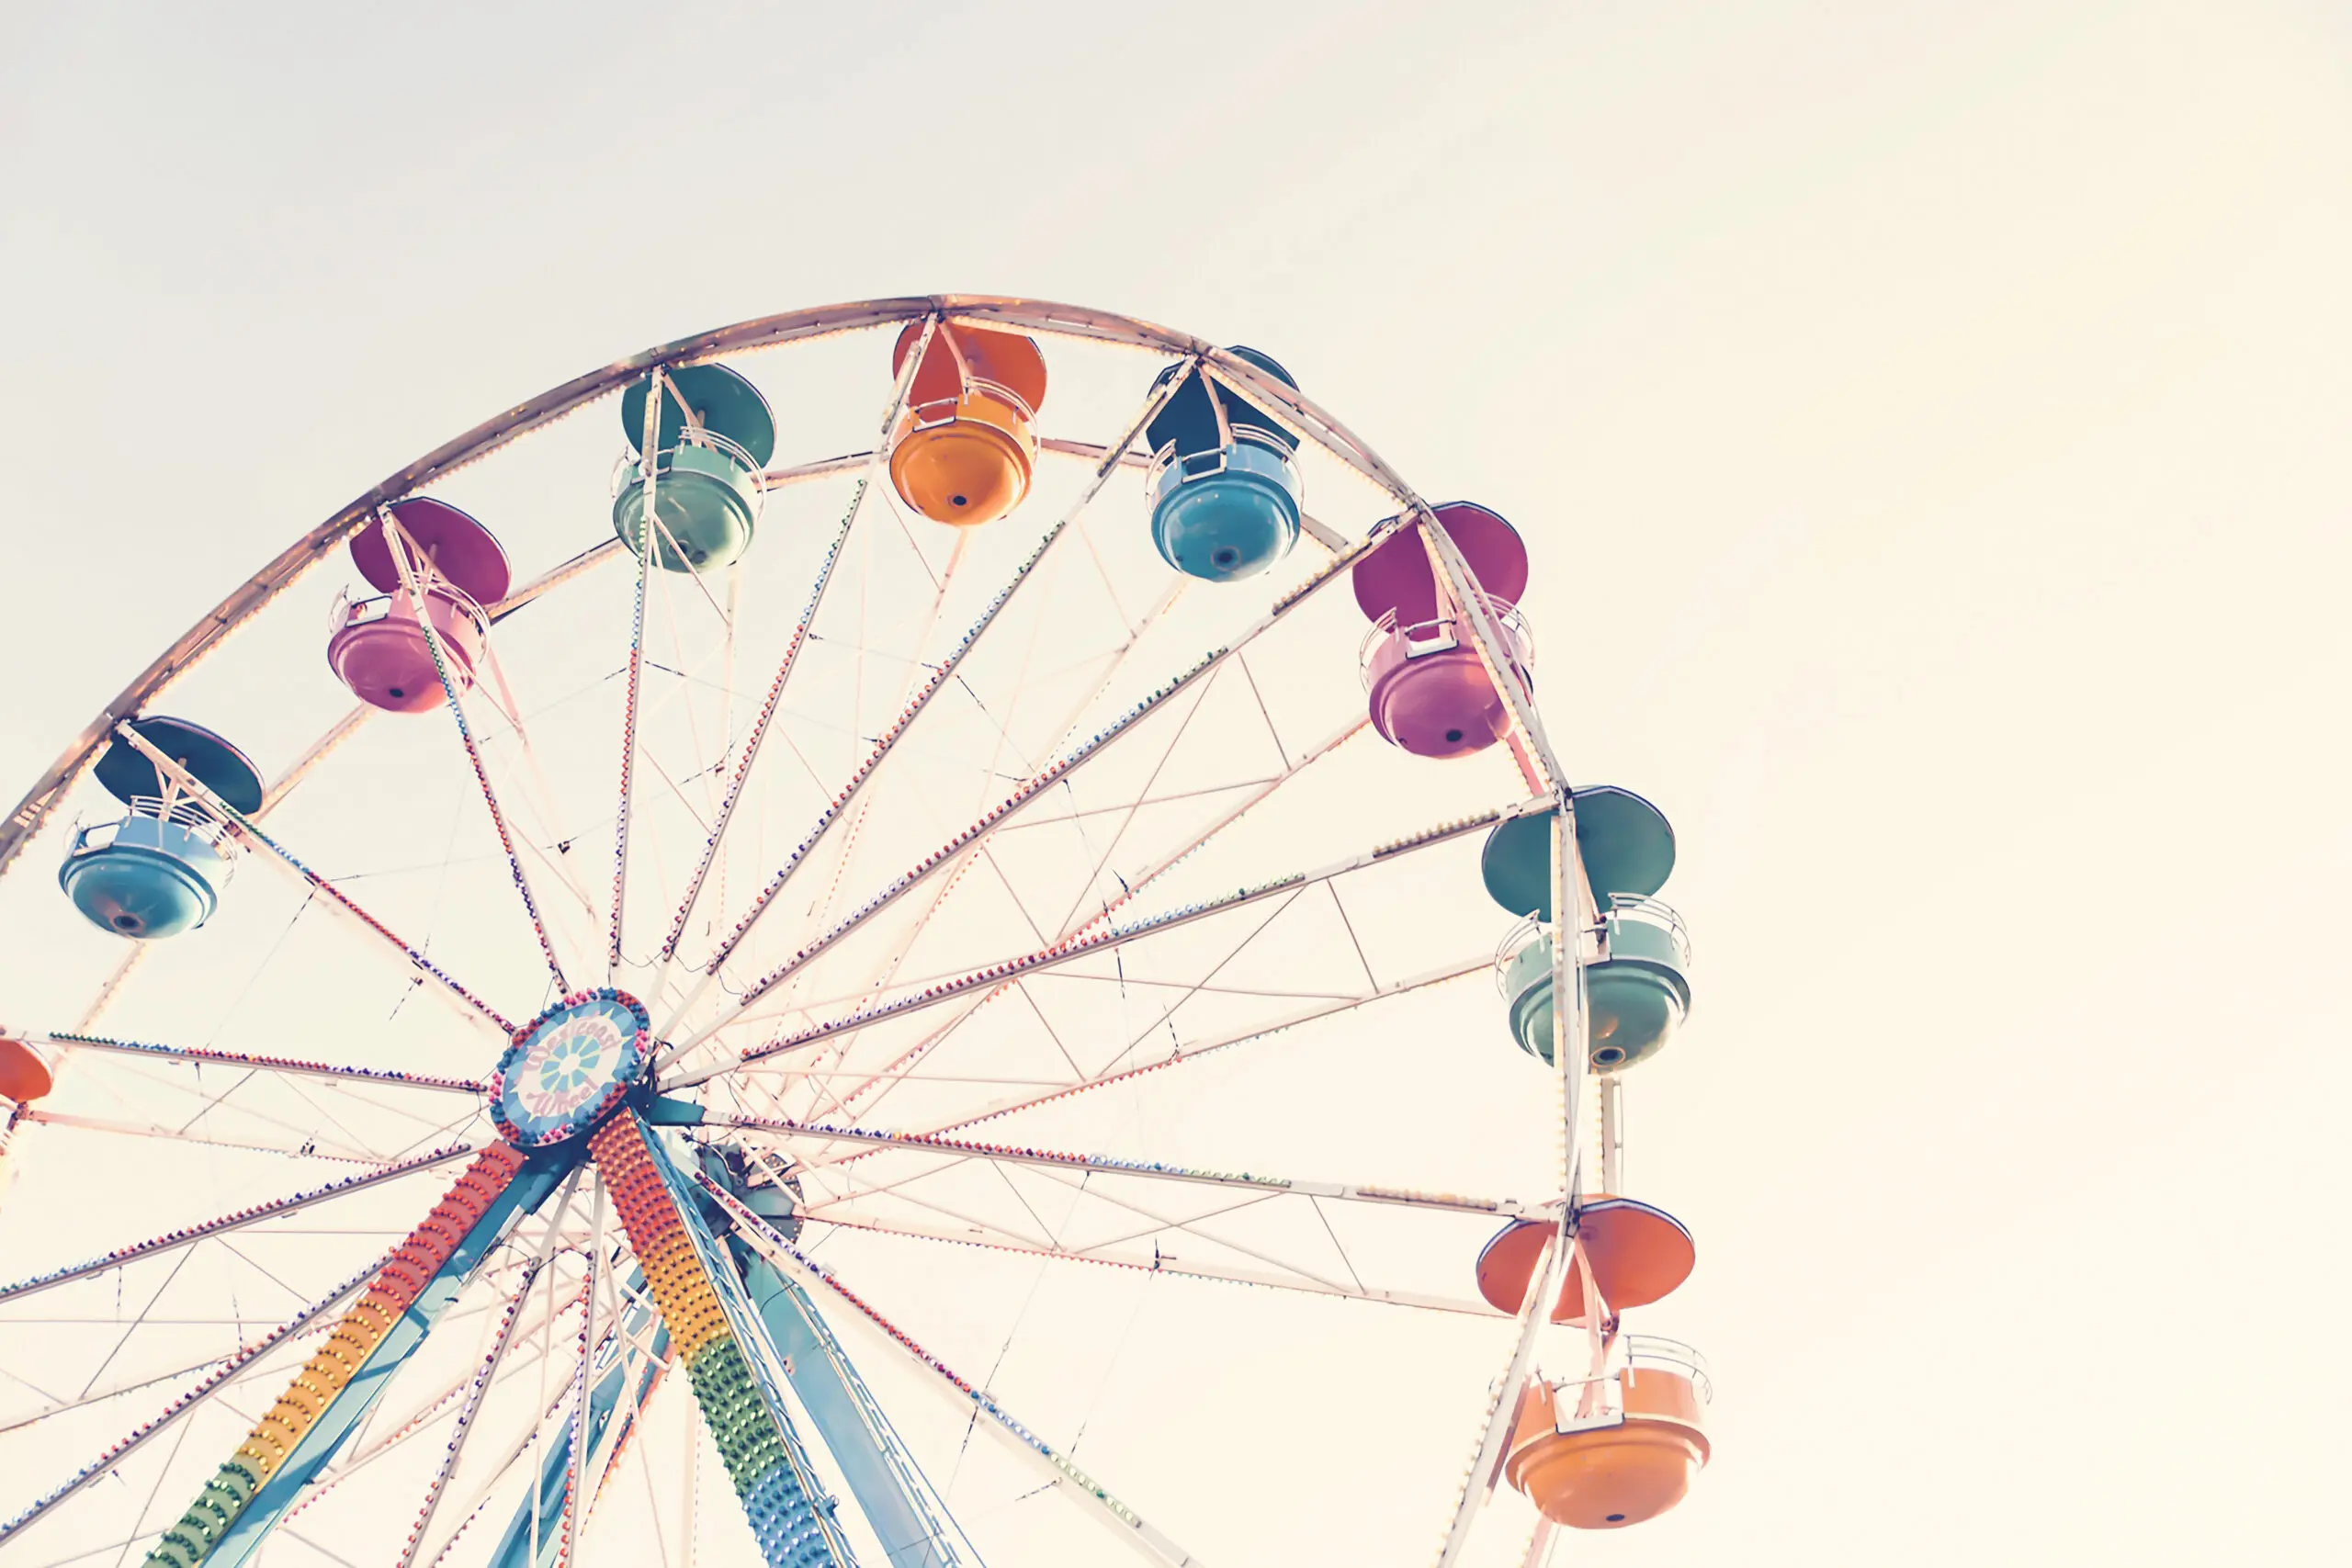 Wandbild (26158) Ferris Wheel by Kathrin Pienaar präsentiert: 